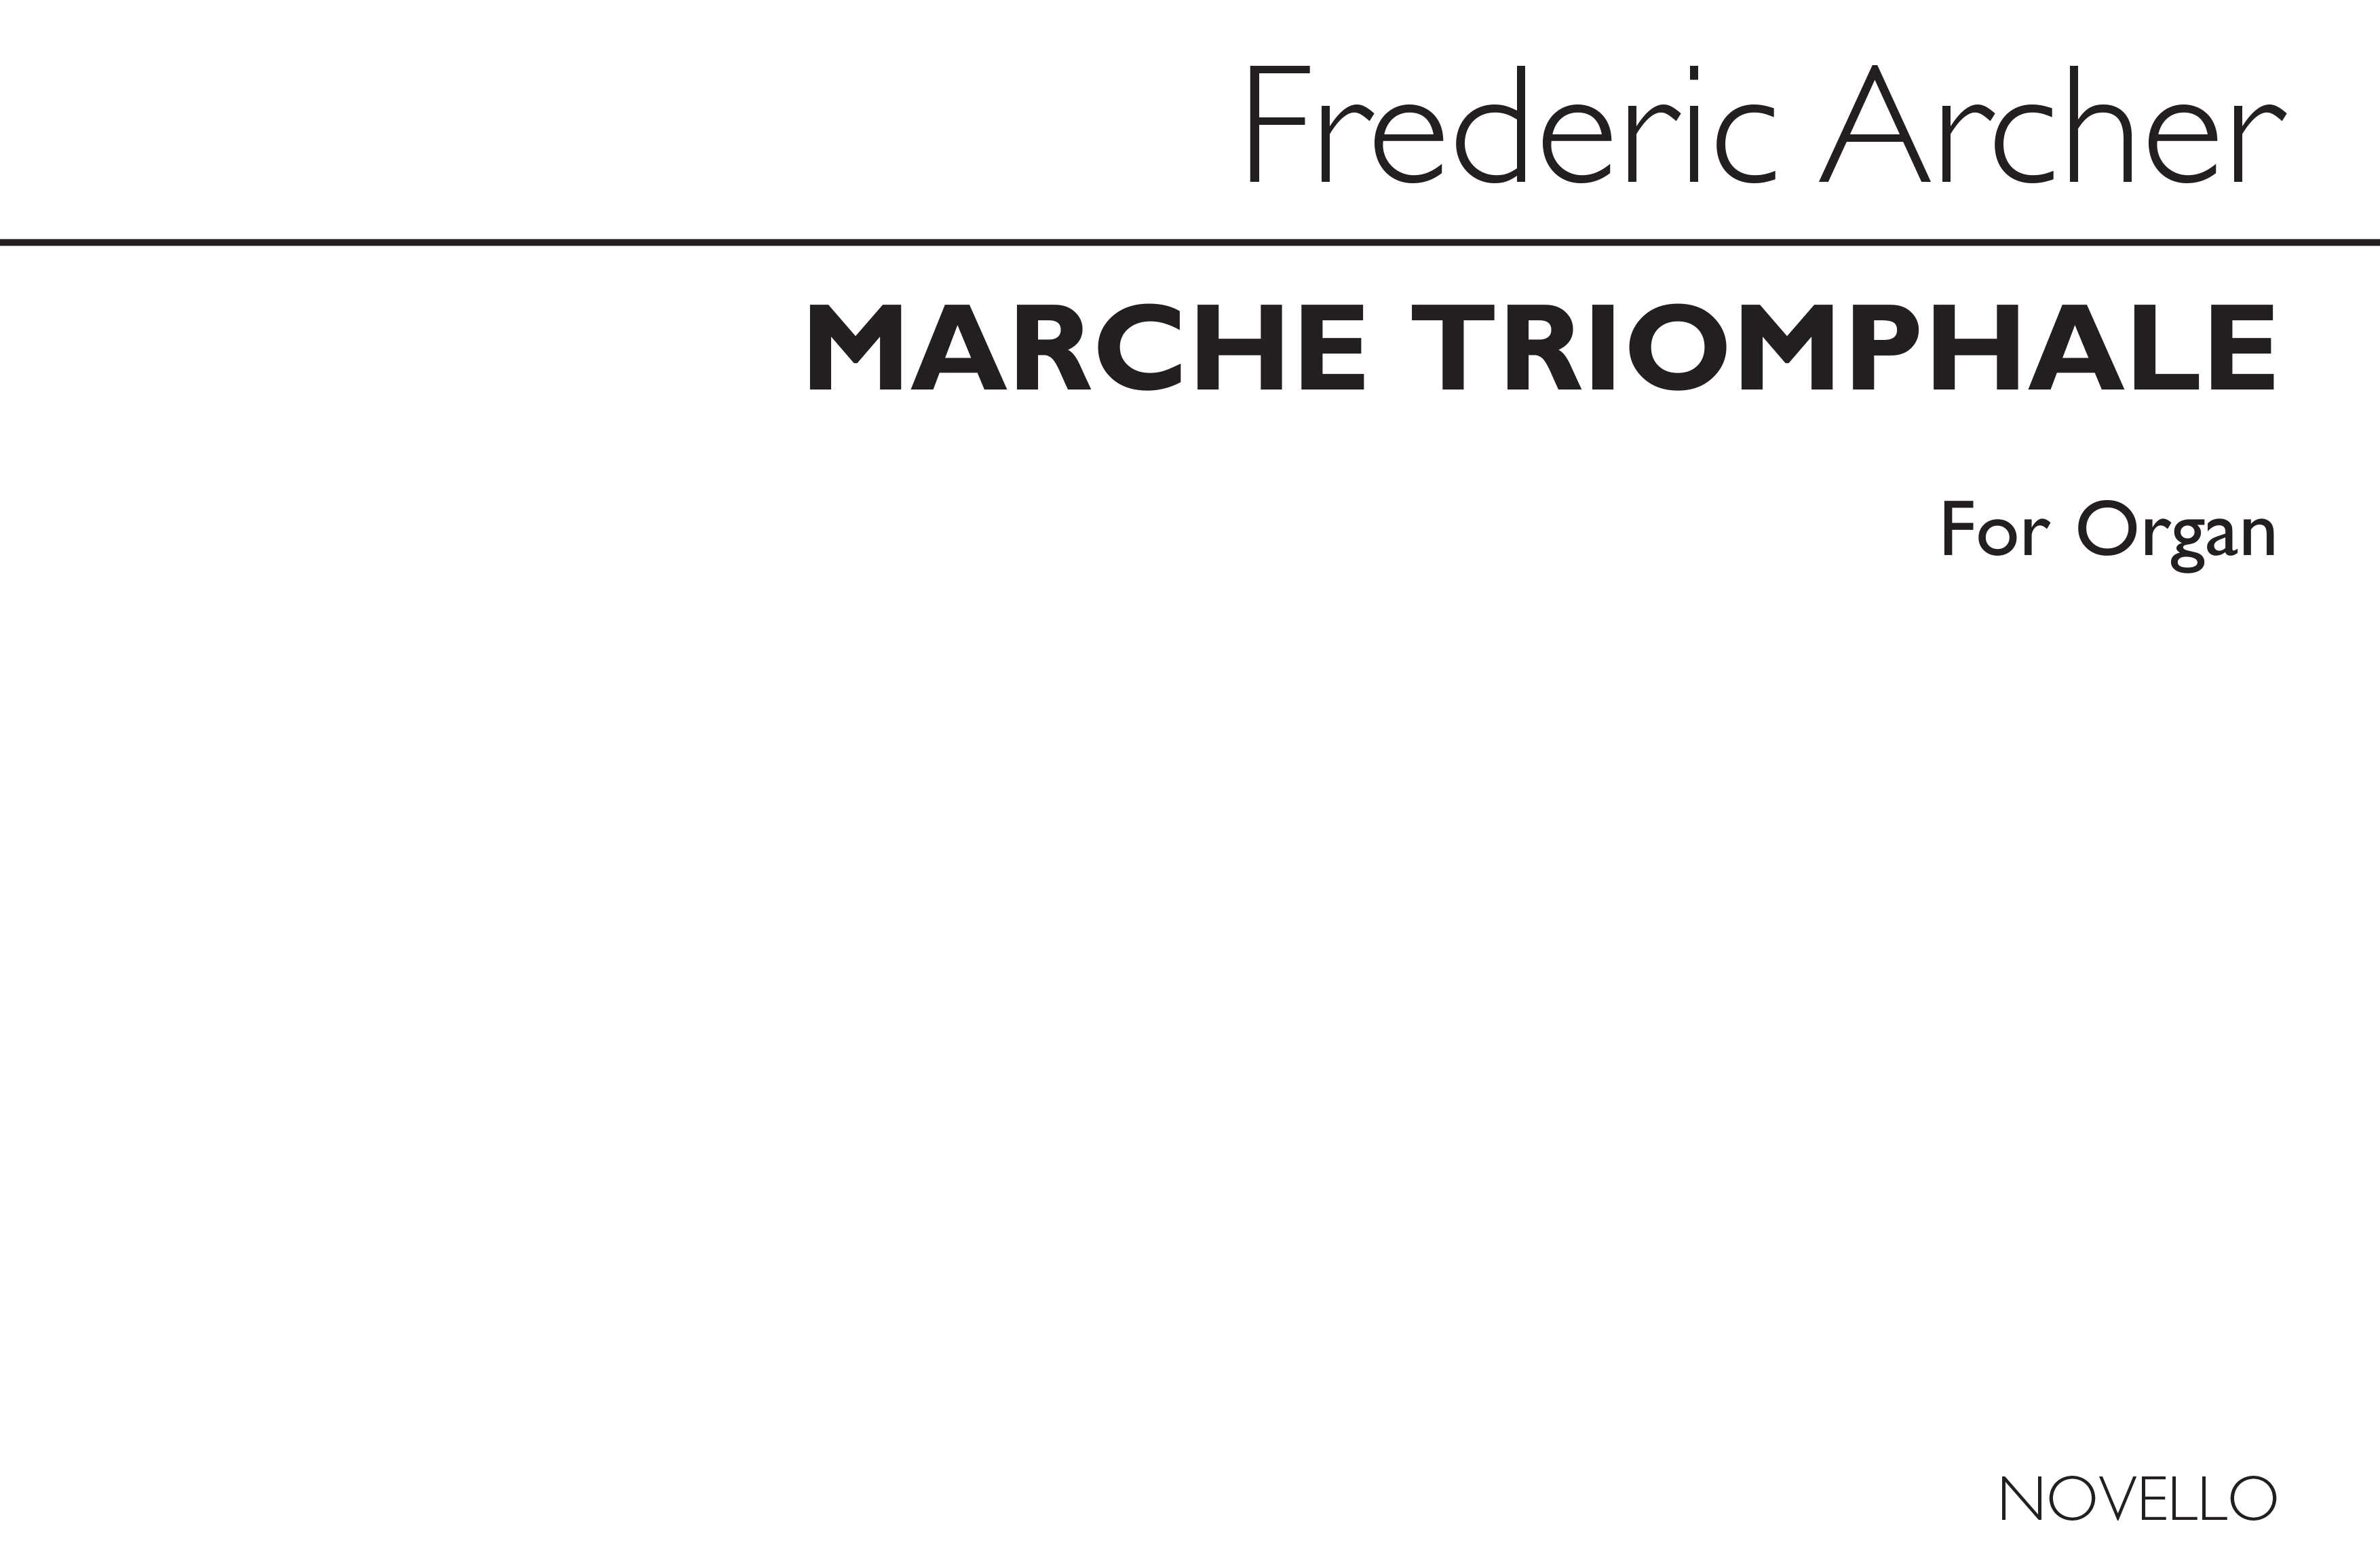 Frederic Archer: March Triomphale For Organ: Organ: Instrumental Work